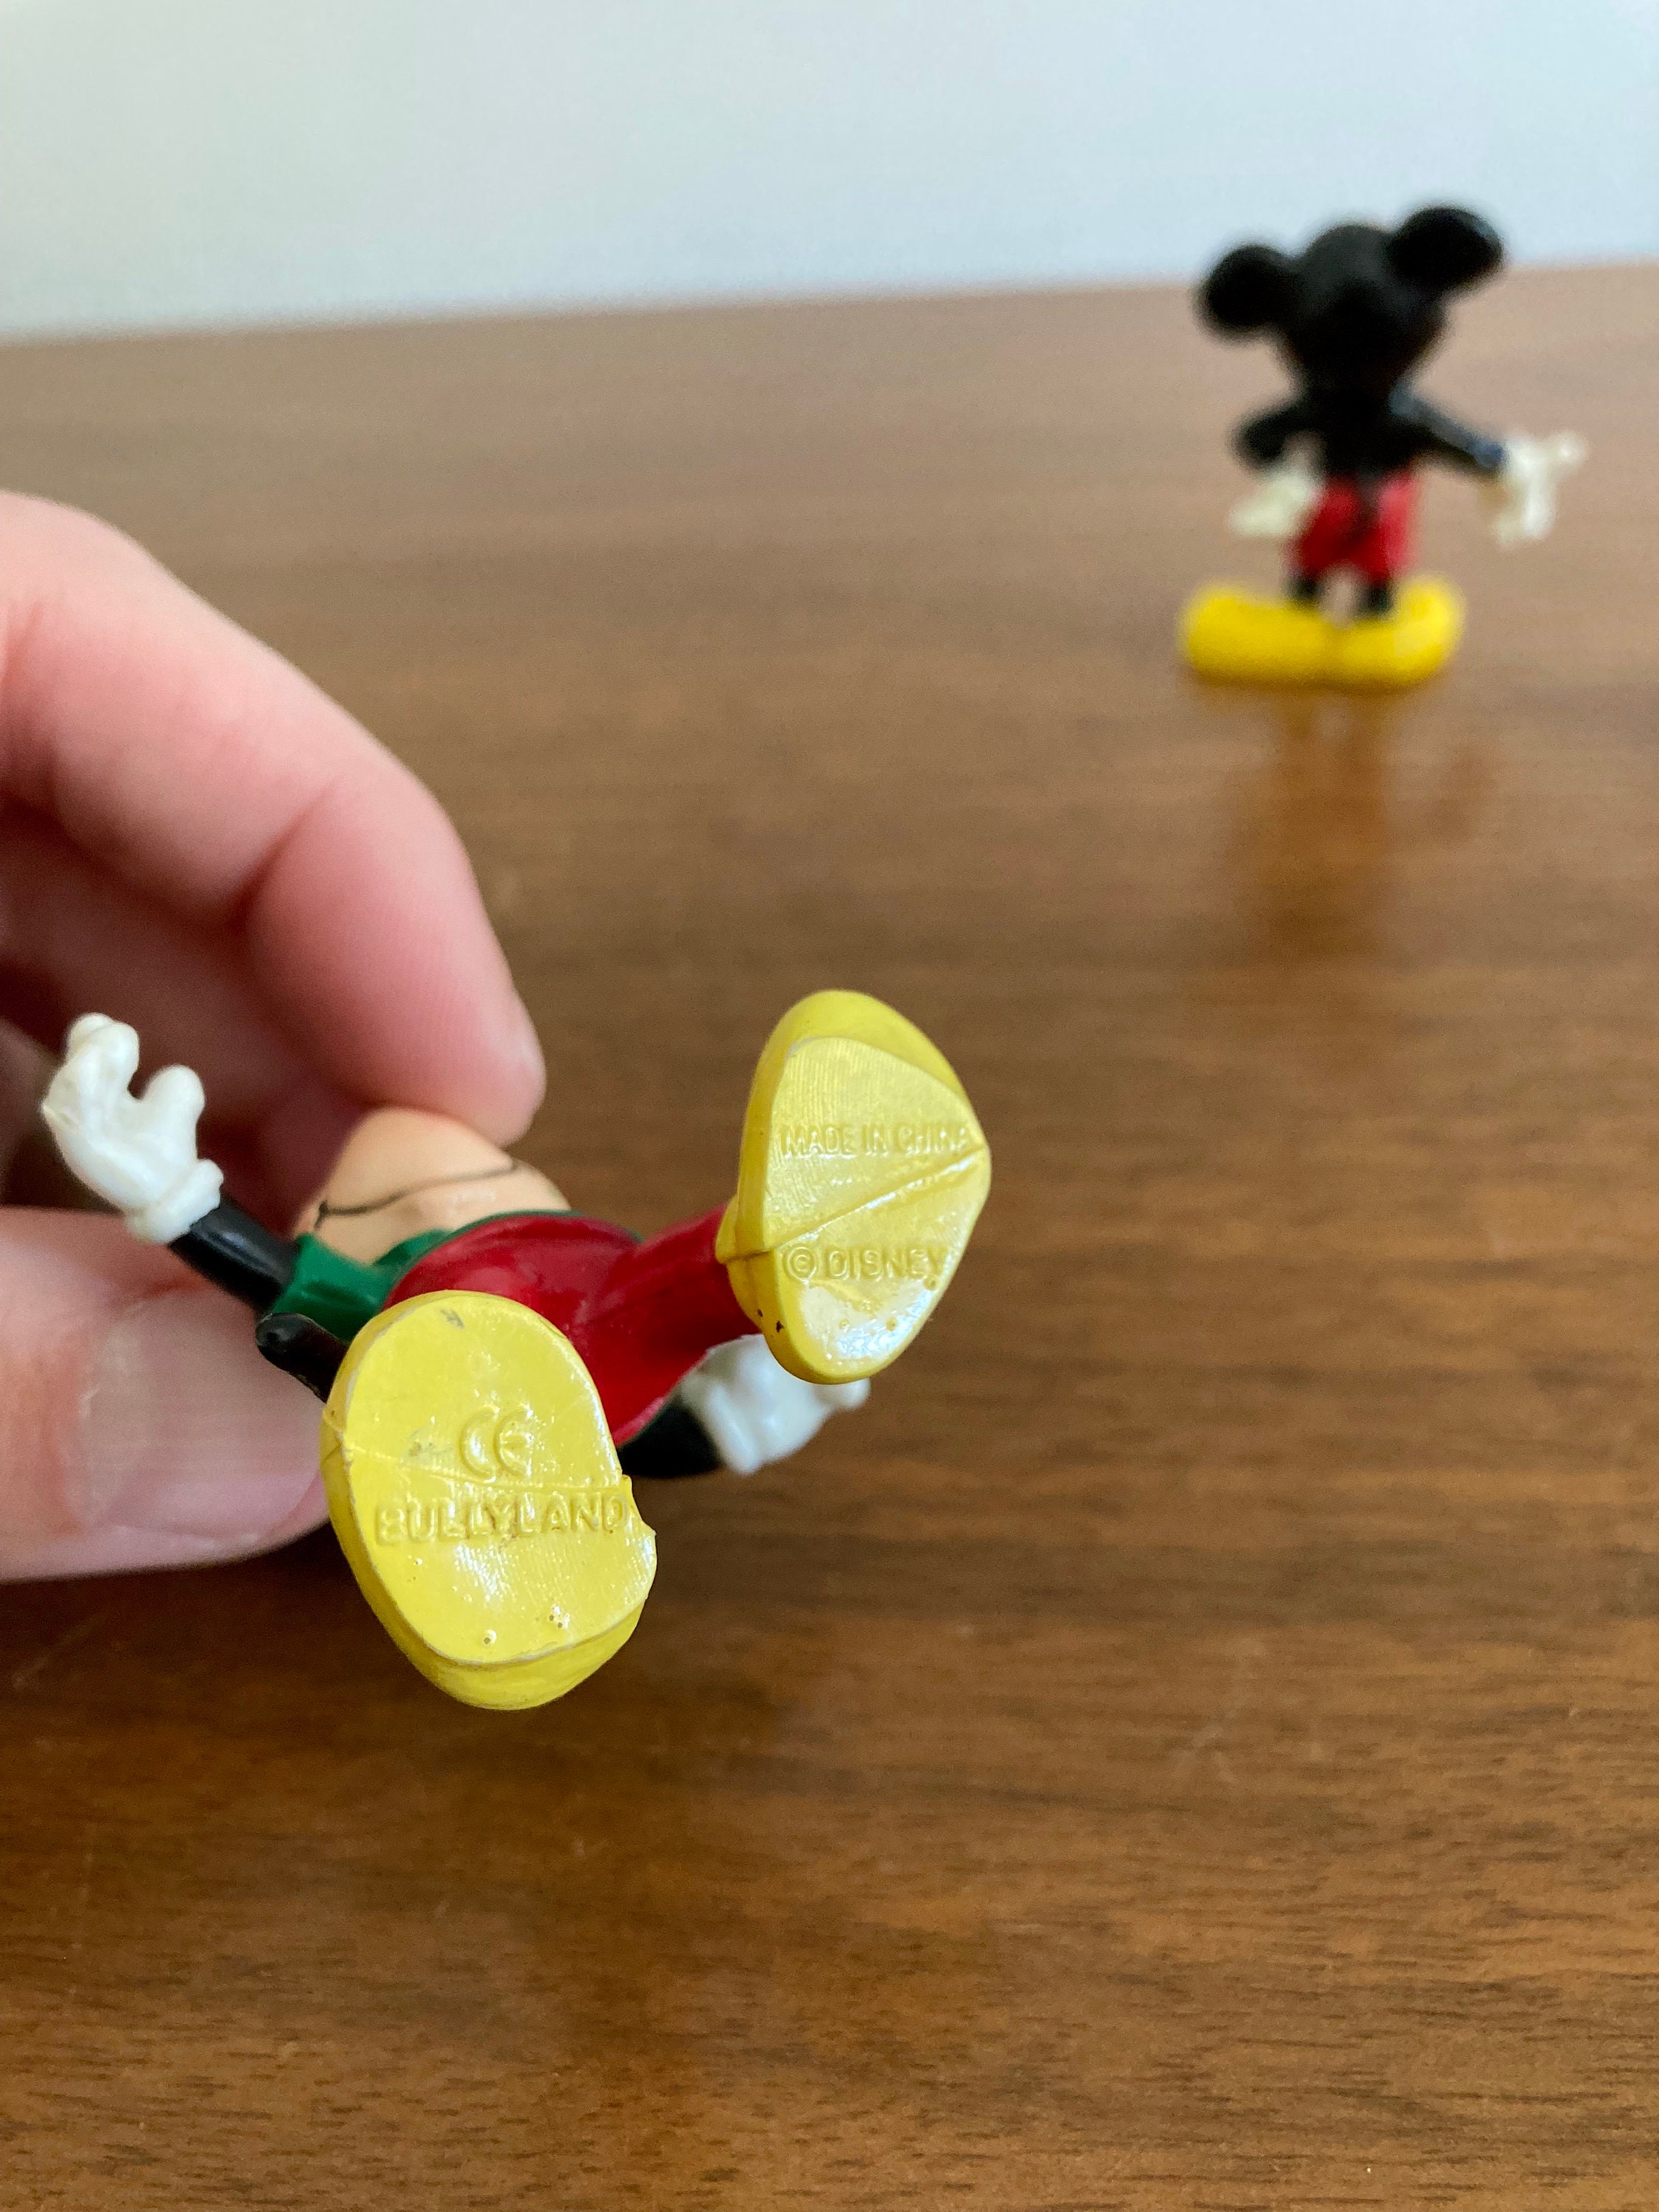 SET 5 mini-figurines Mickey et Minnie Mouse vintage Disney Bully Allemagne  de lOuest Mickey Mouse Minnie Mouse Jouets des années 80 Rétro Disney -   Canada